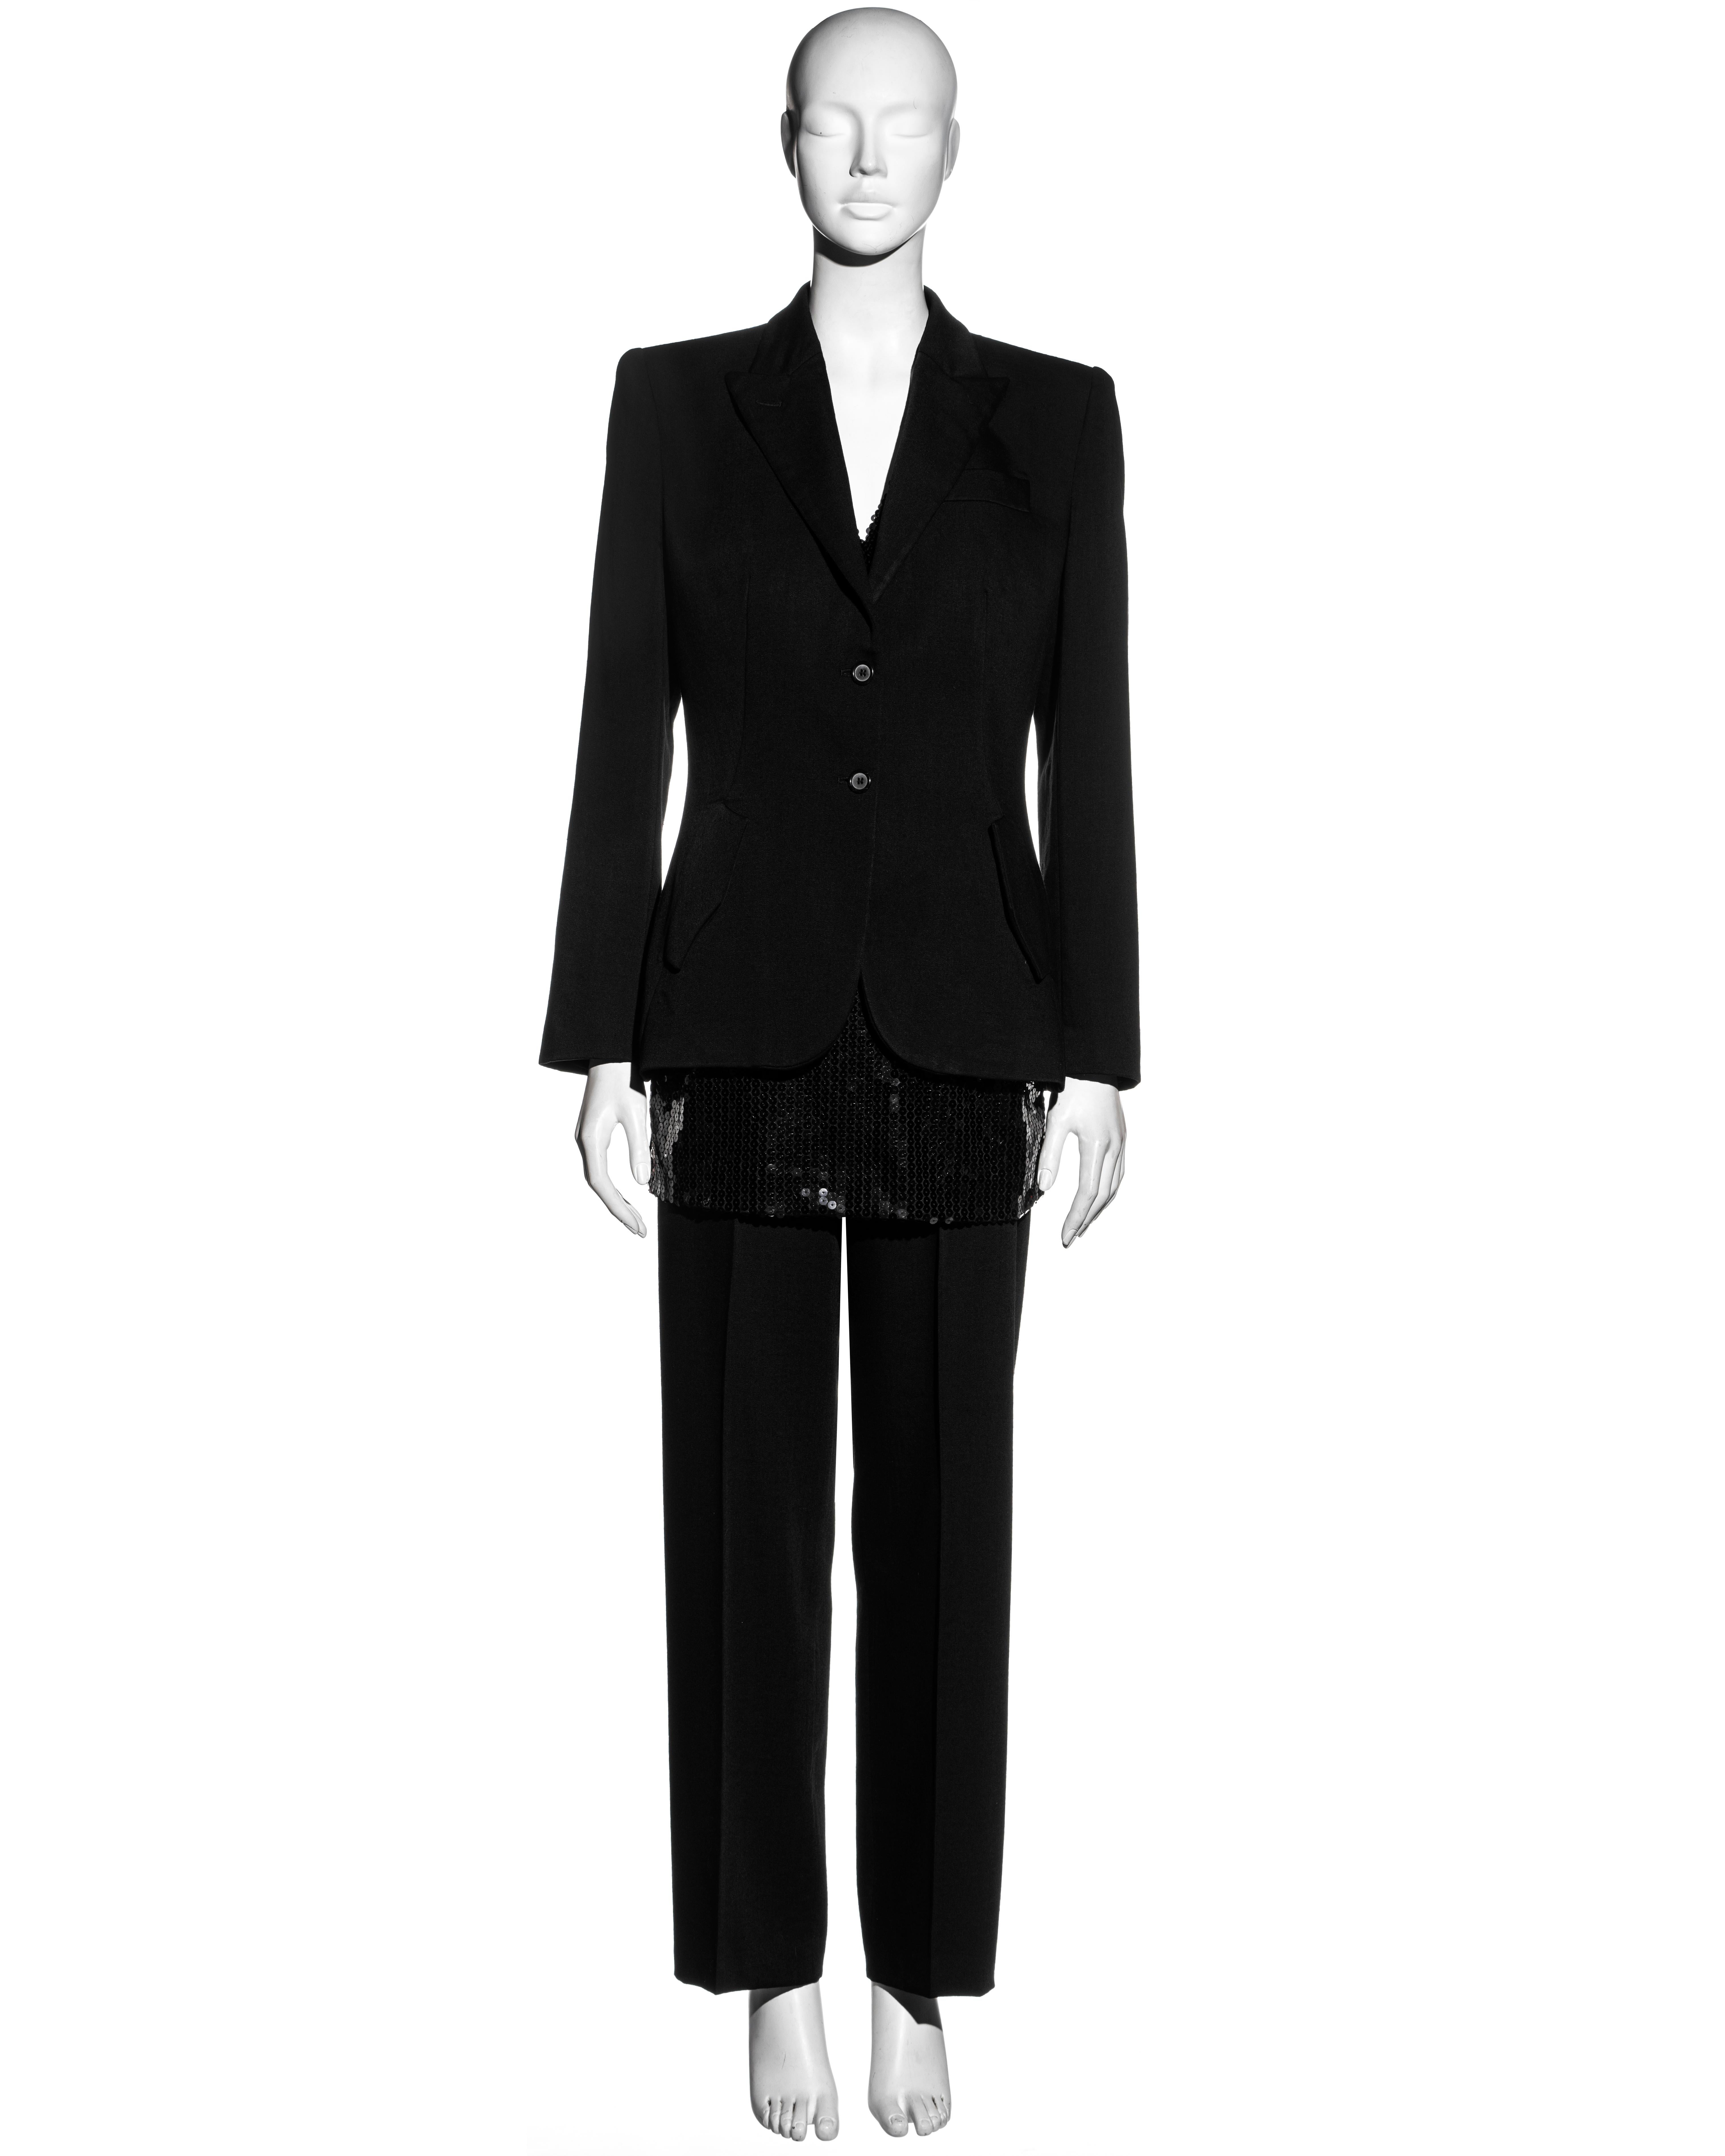 black suit with alexander mcqueen's